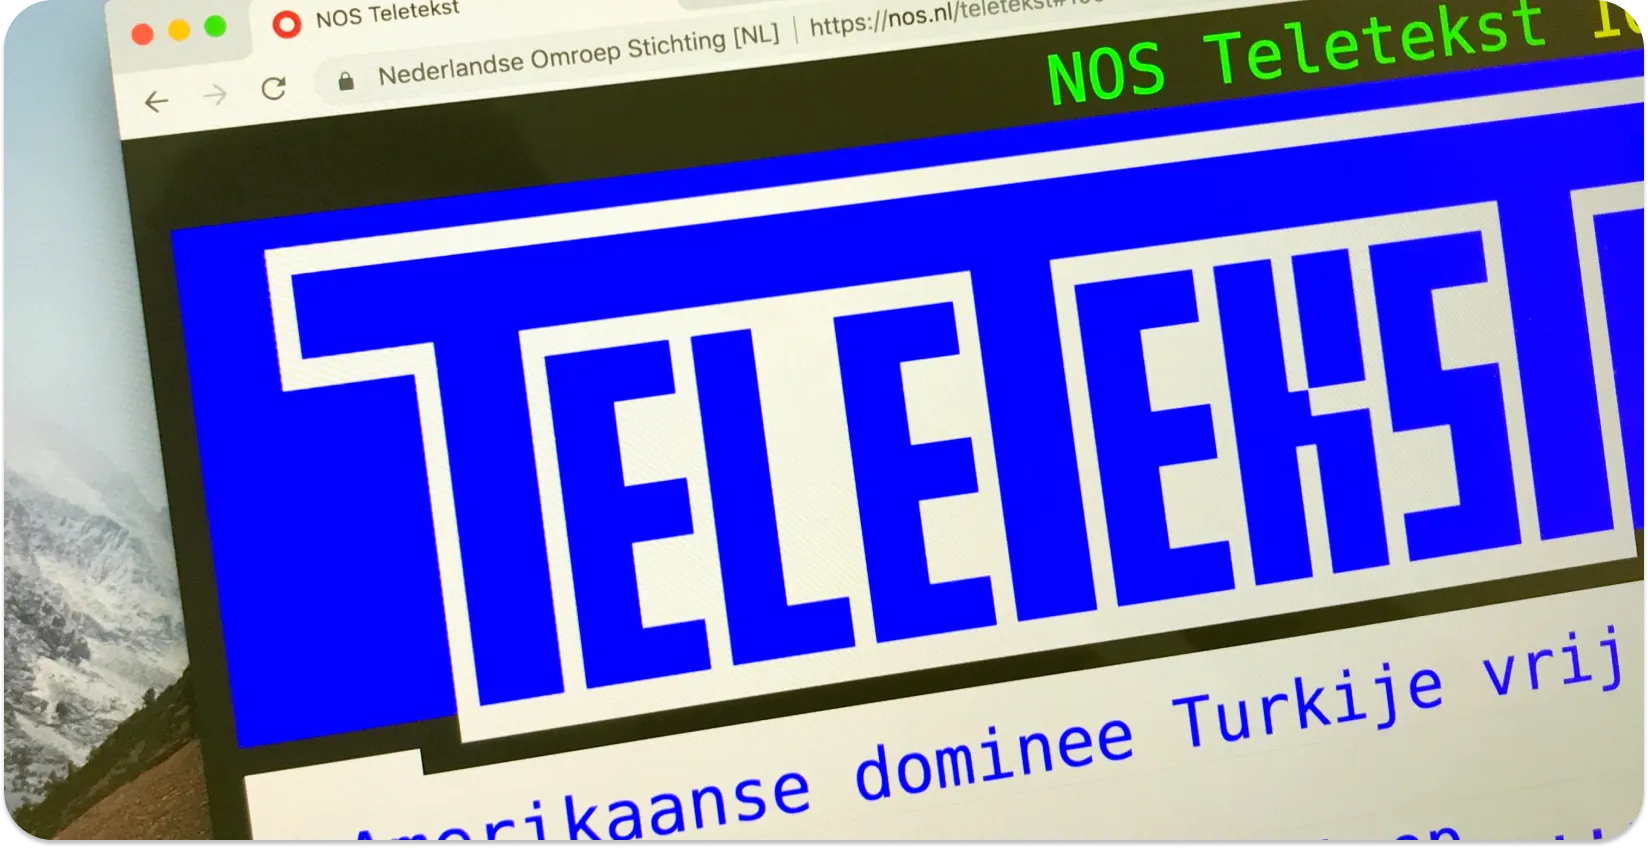 Μια οθόνη υπολογιστή που εμφανίζει υπότιτλους Teletext με τίτλους ειδήσεων, παραδειγματίζοντας τη μορφή υποτίτλων teletext.